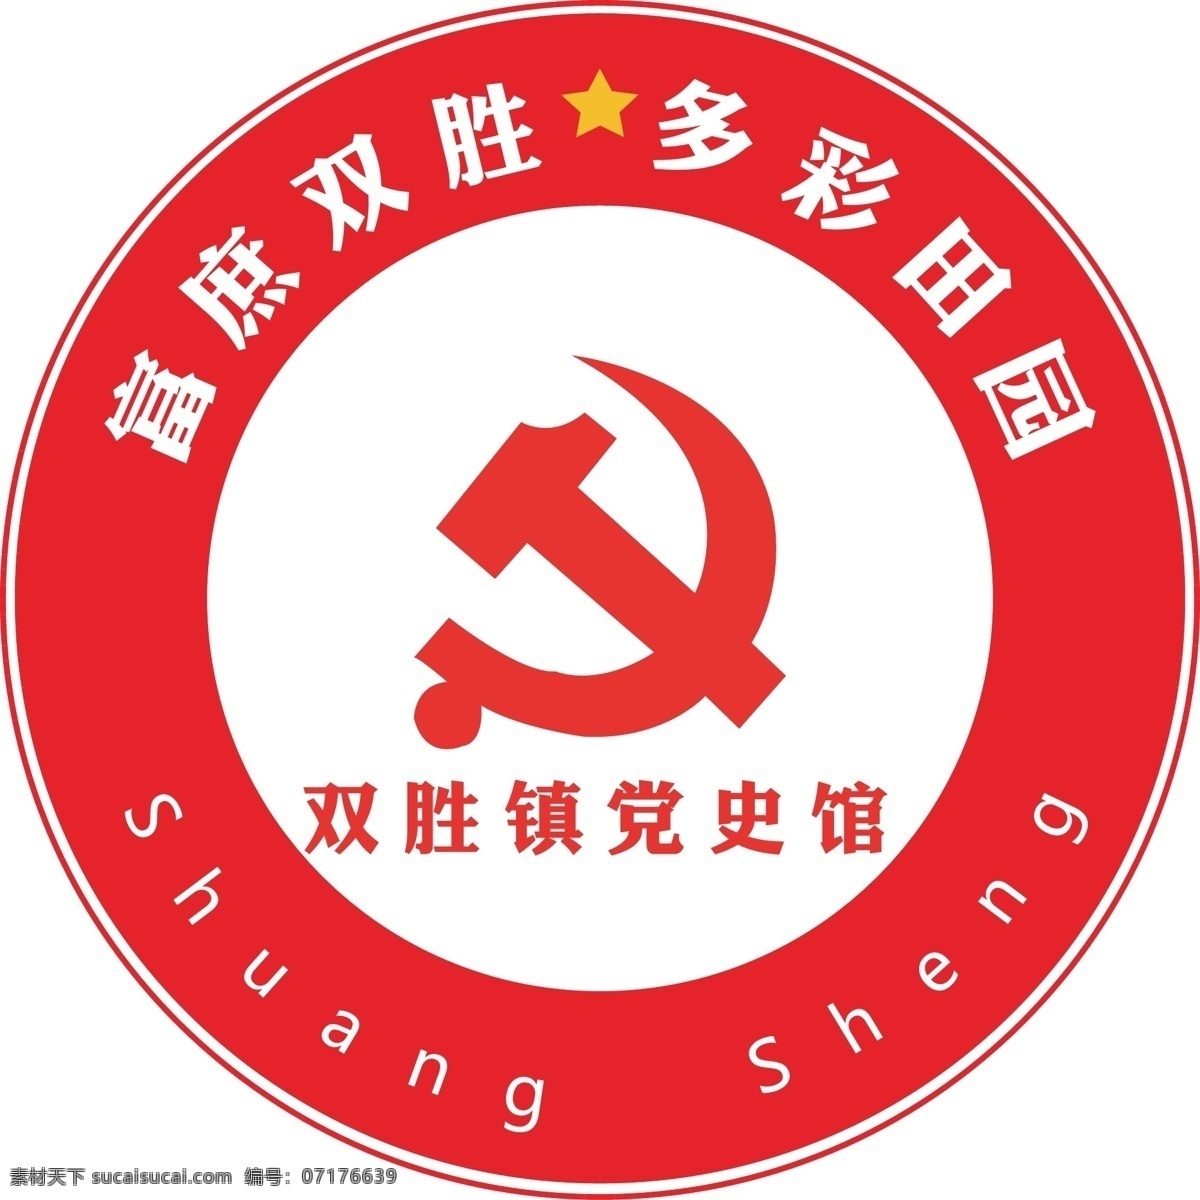 党史 馆 logo 党史馆 党 红色 党徽 标志图标 企业 标志